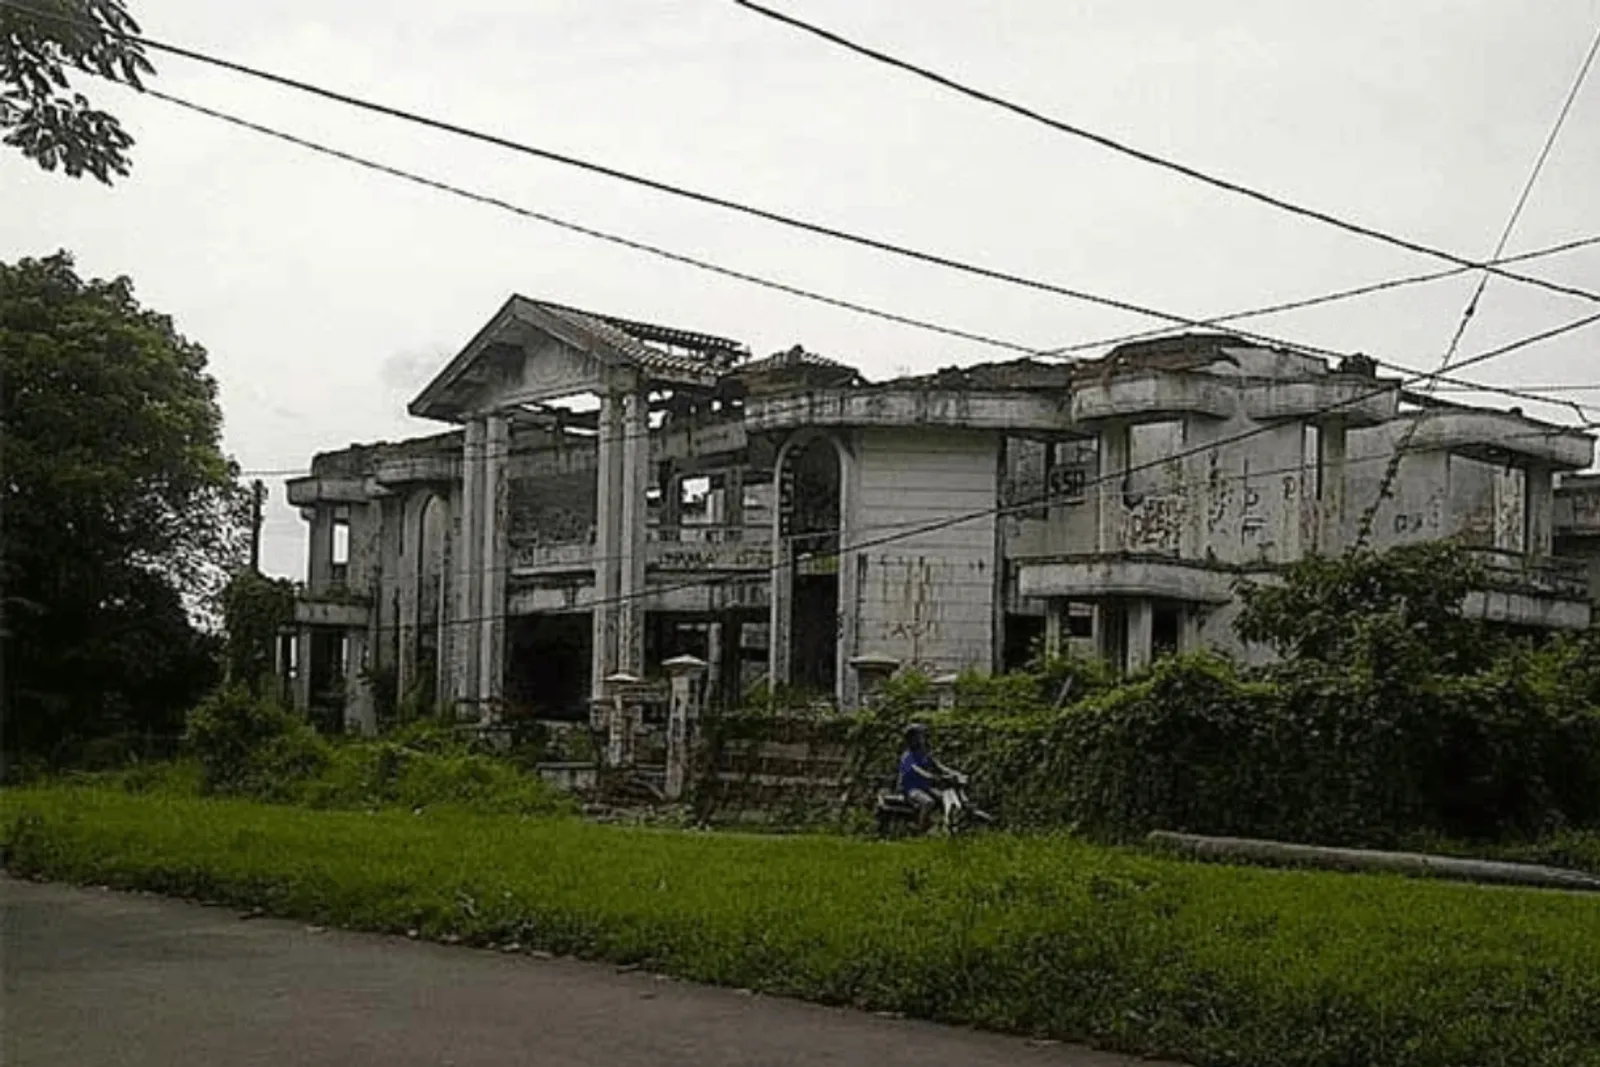 5 Potret Rumah Hantu Darmo, Tempat Angker Terkenal di Surabaya